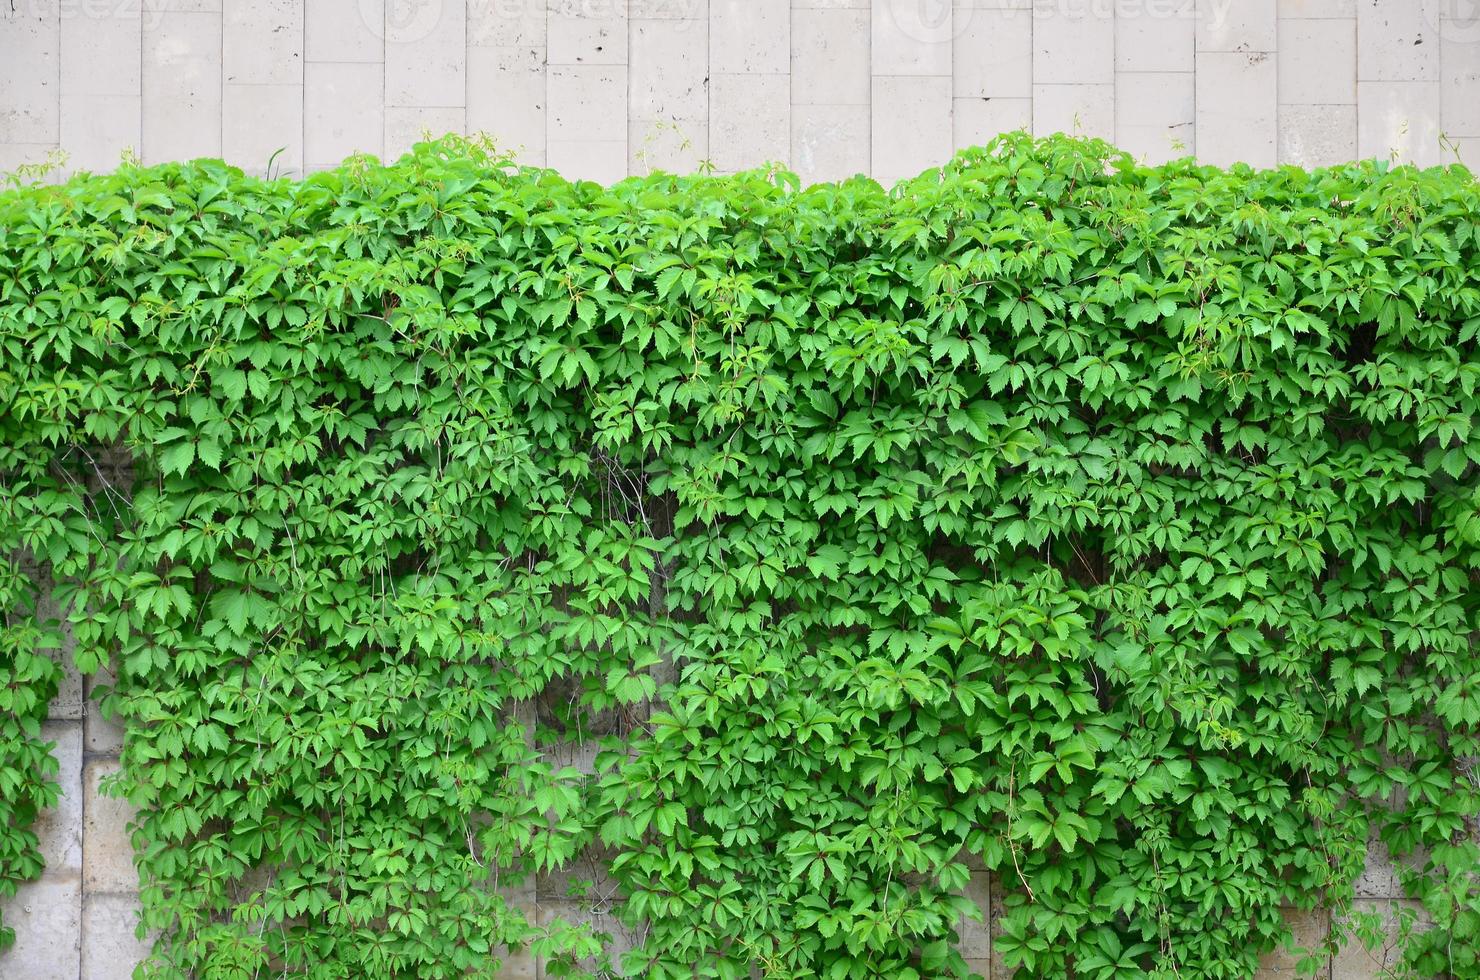 la hiedra verde crece a lo largo de la pared beige de azulejos pintados. textura de densos matorrales de hiedra silvestre foto